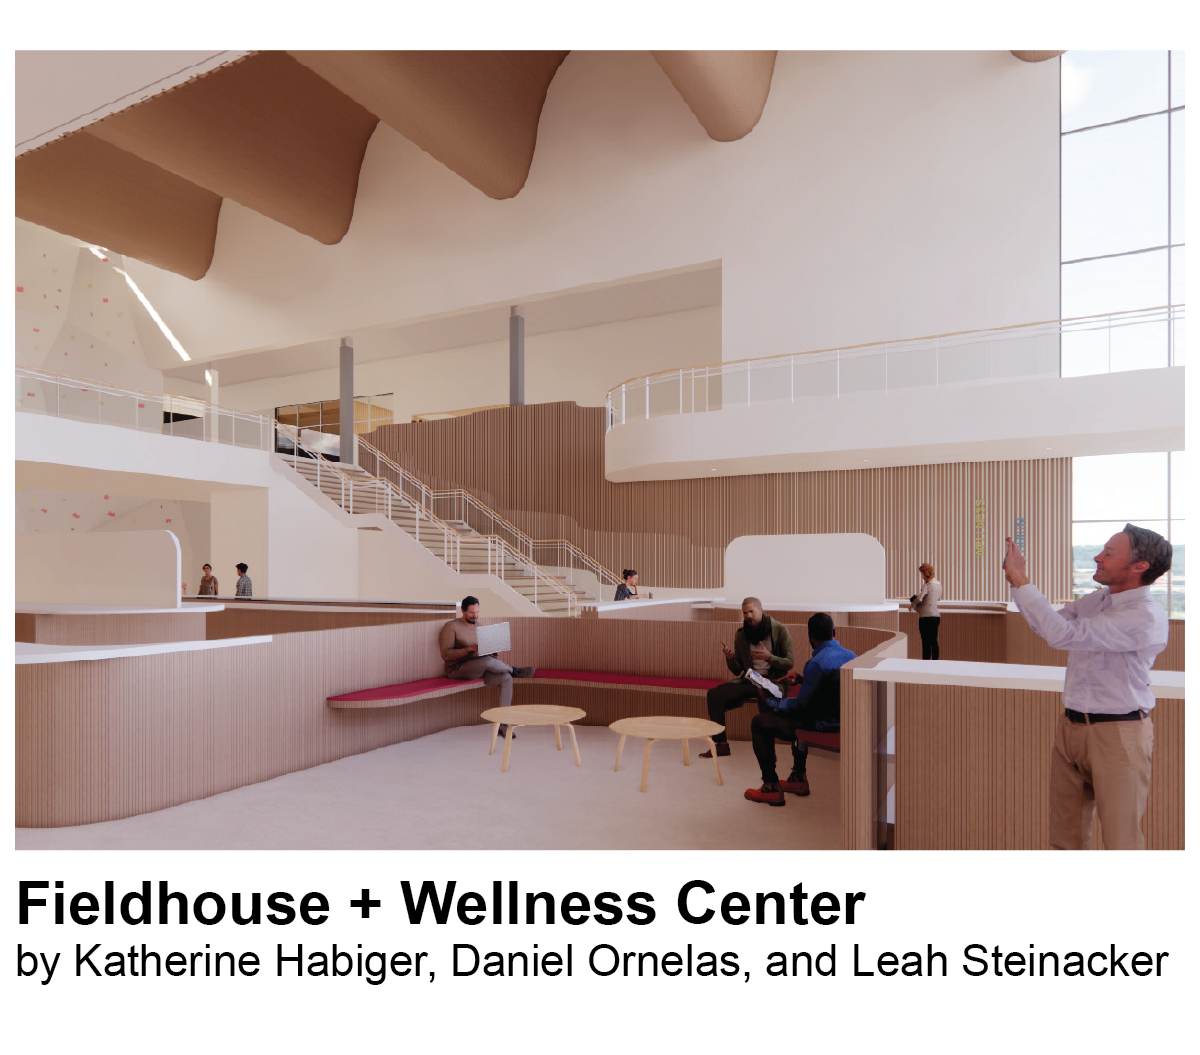 Fieldhouse + Wellness Center